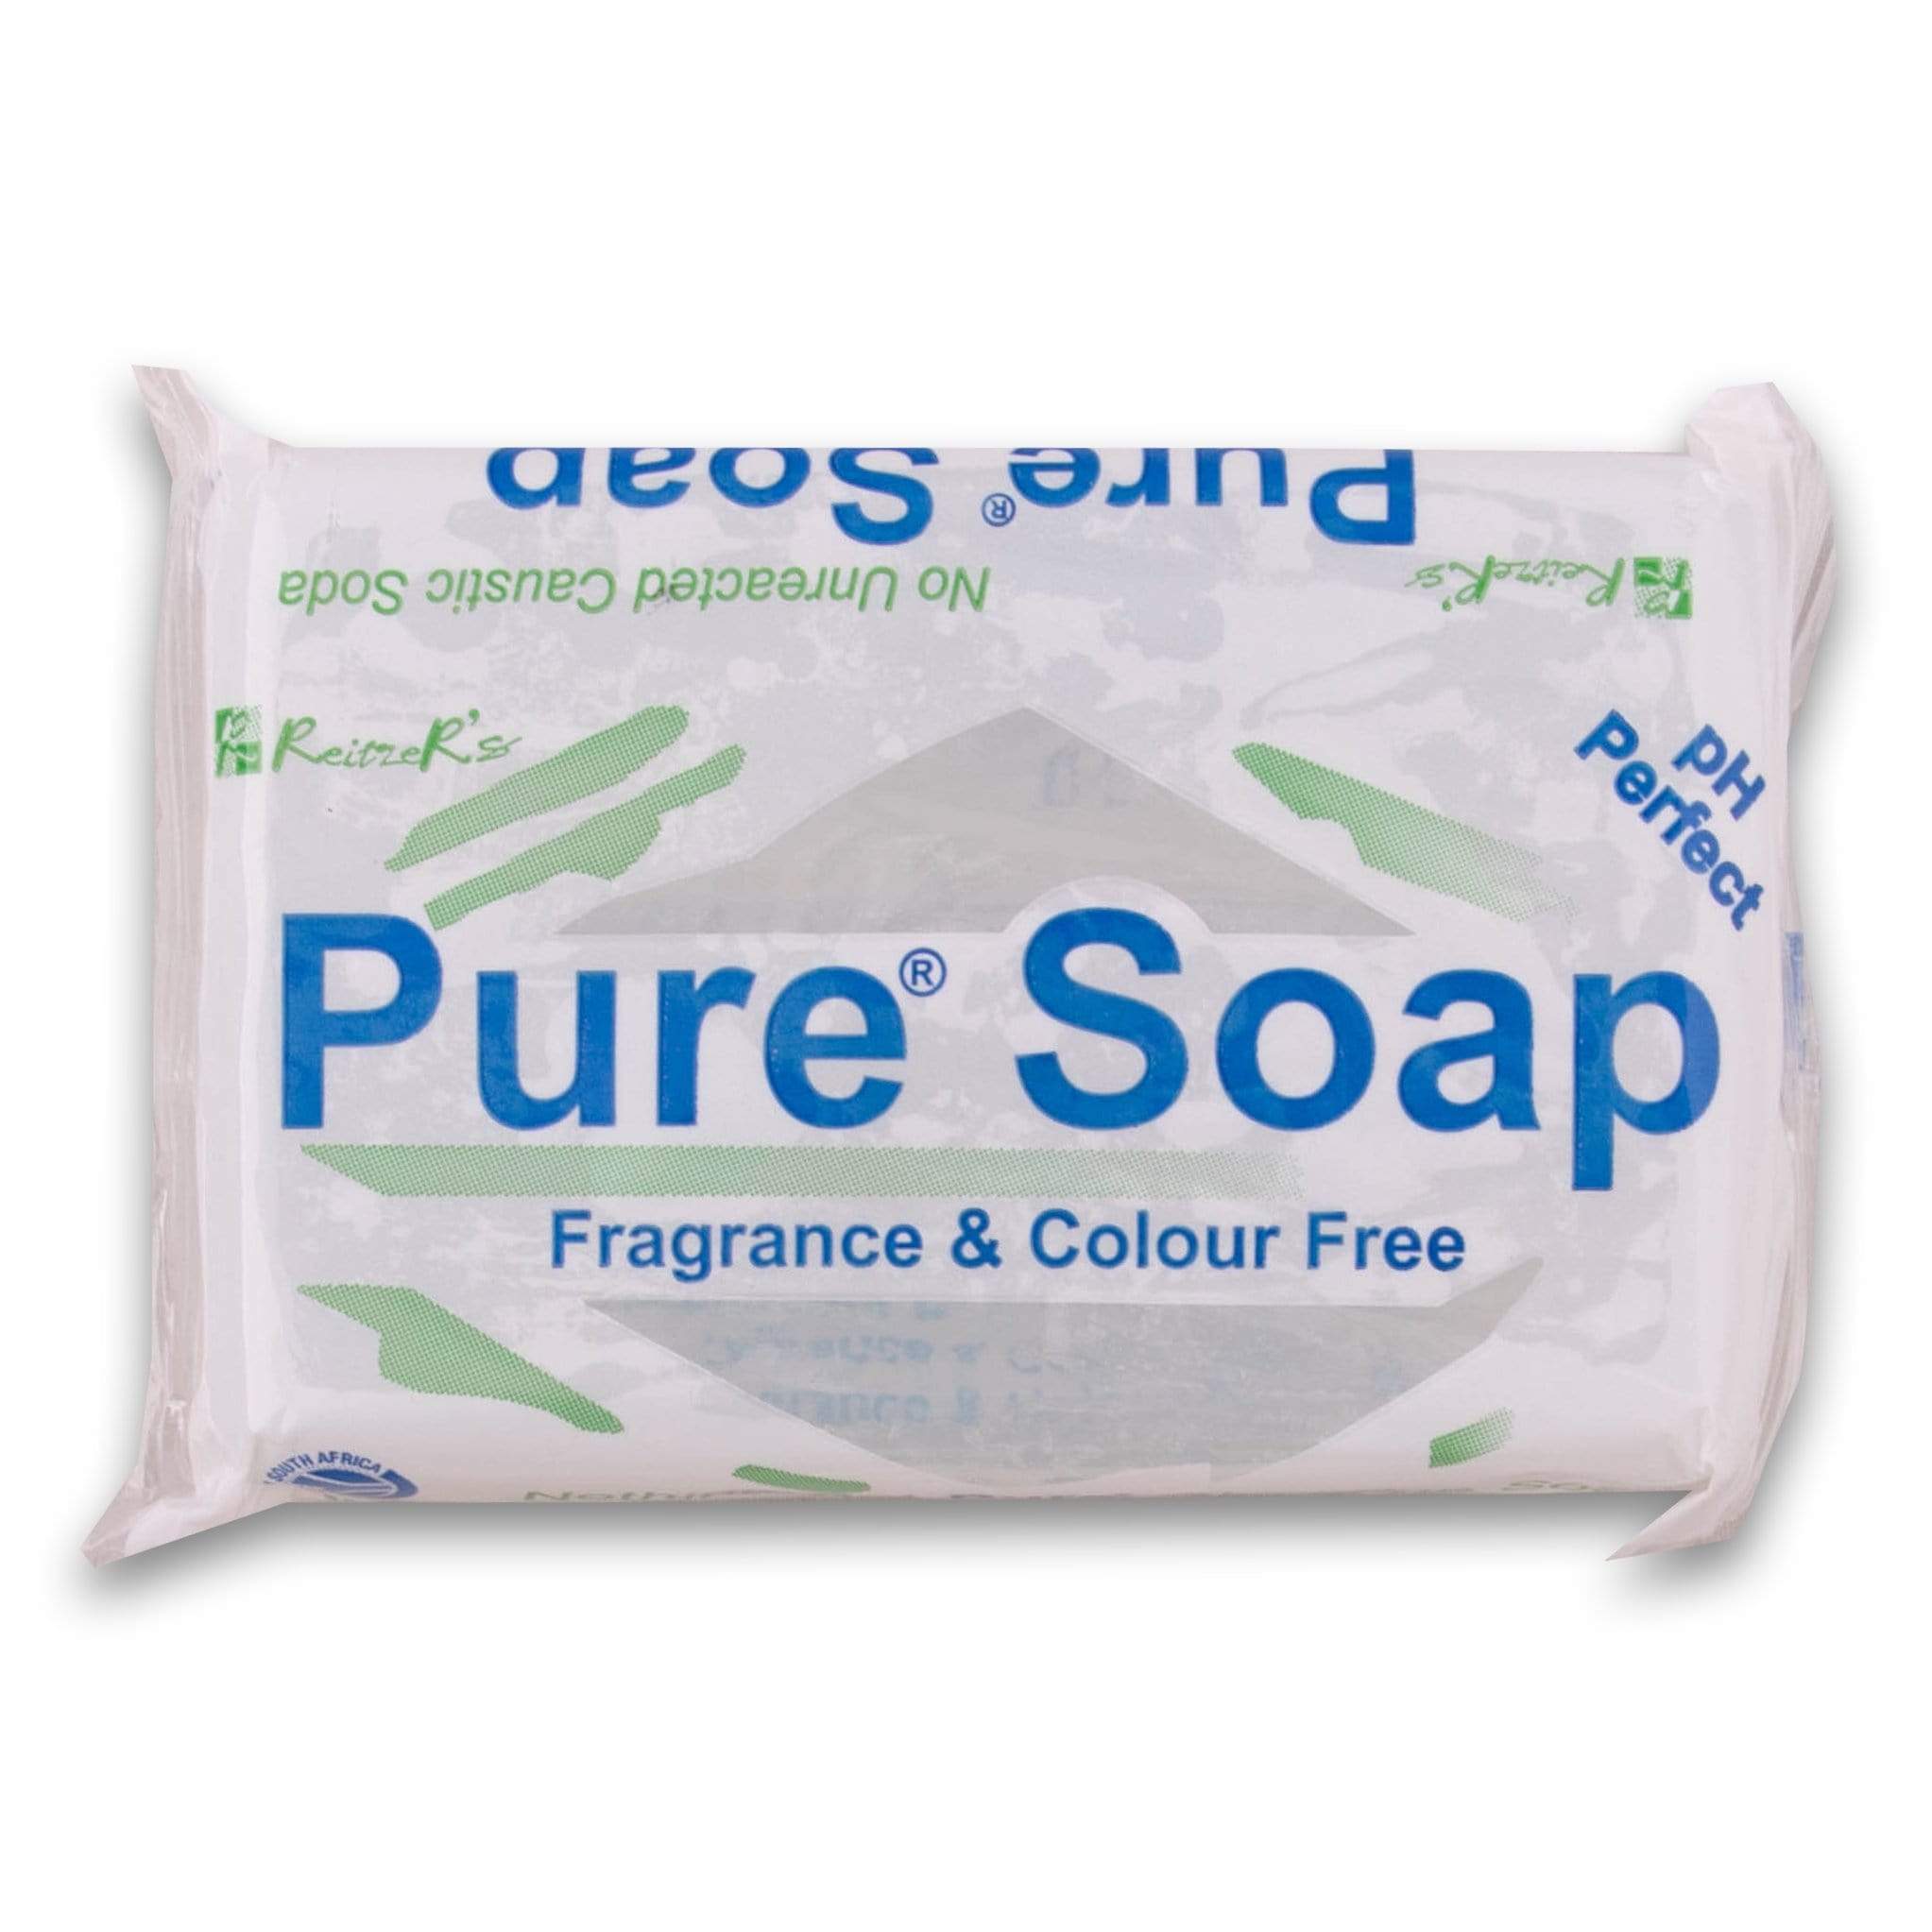 Pure Soap Original 150g